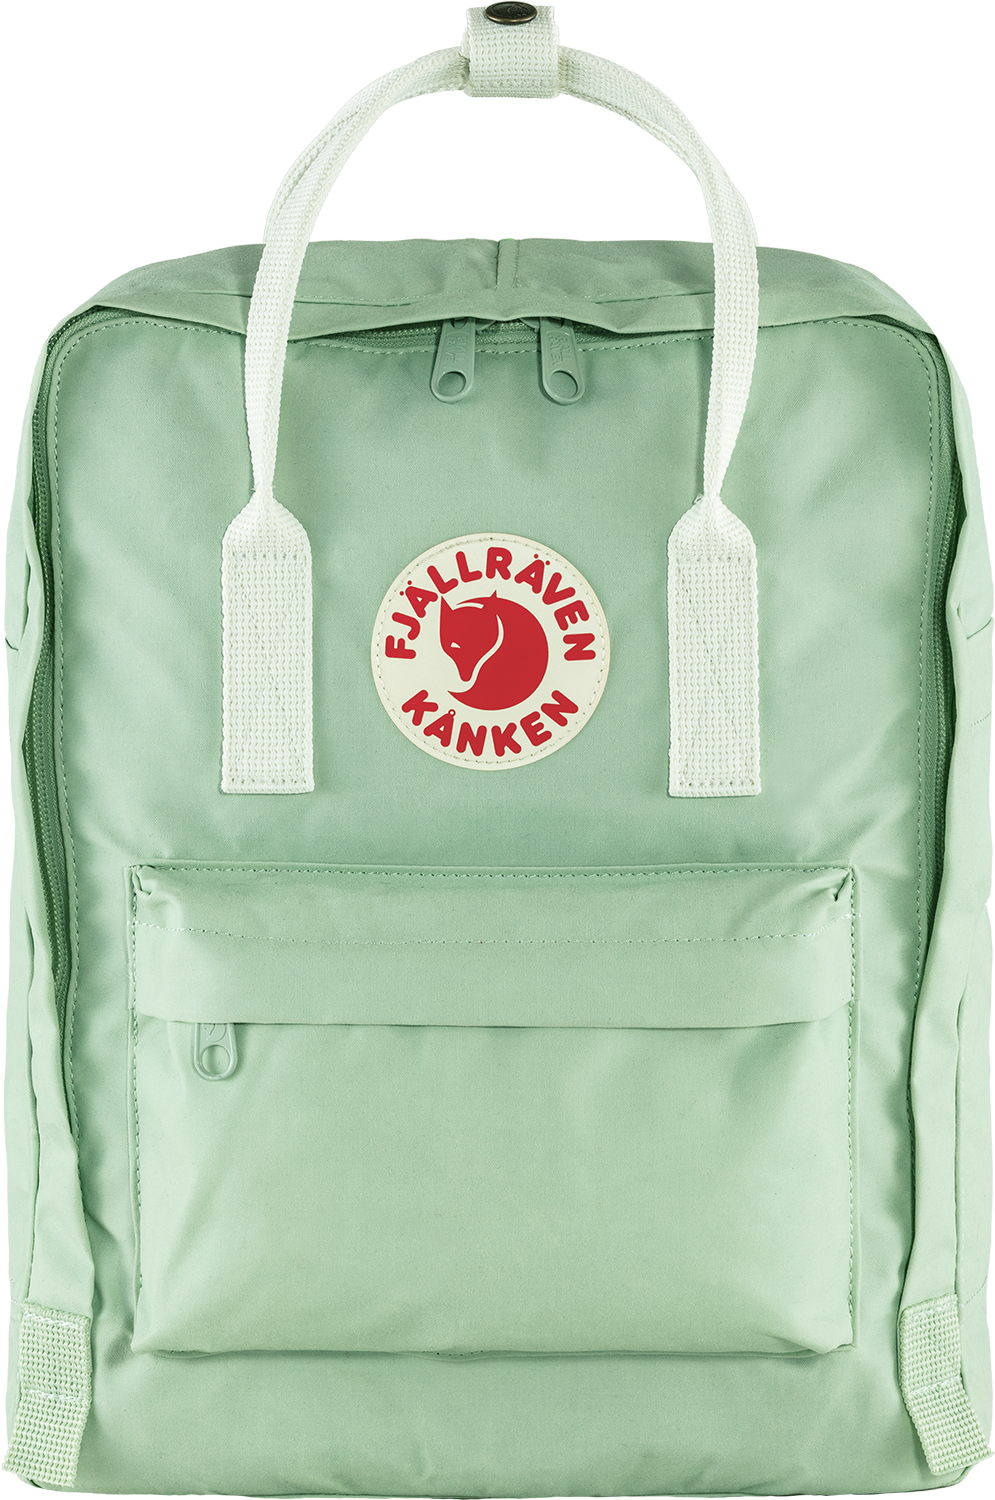 premium branded uisex backpack